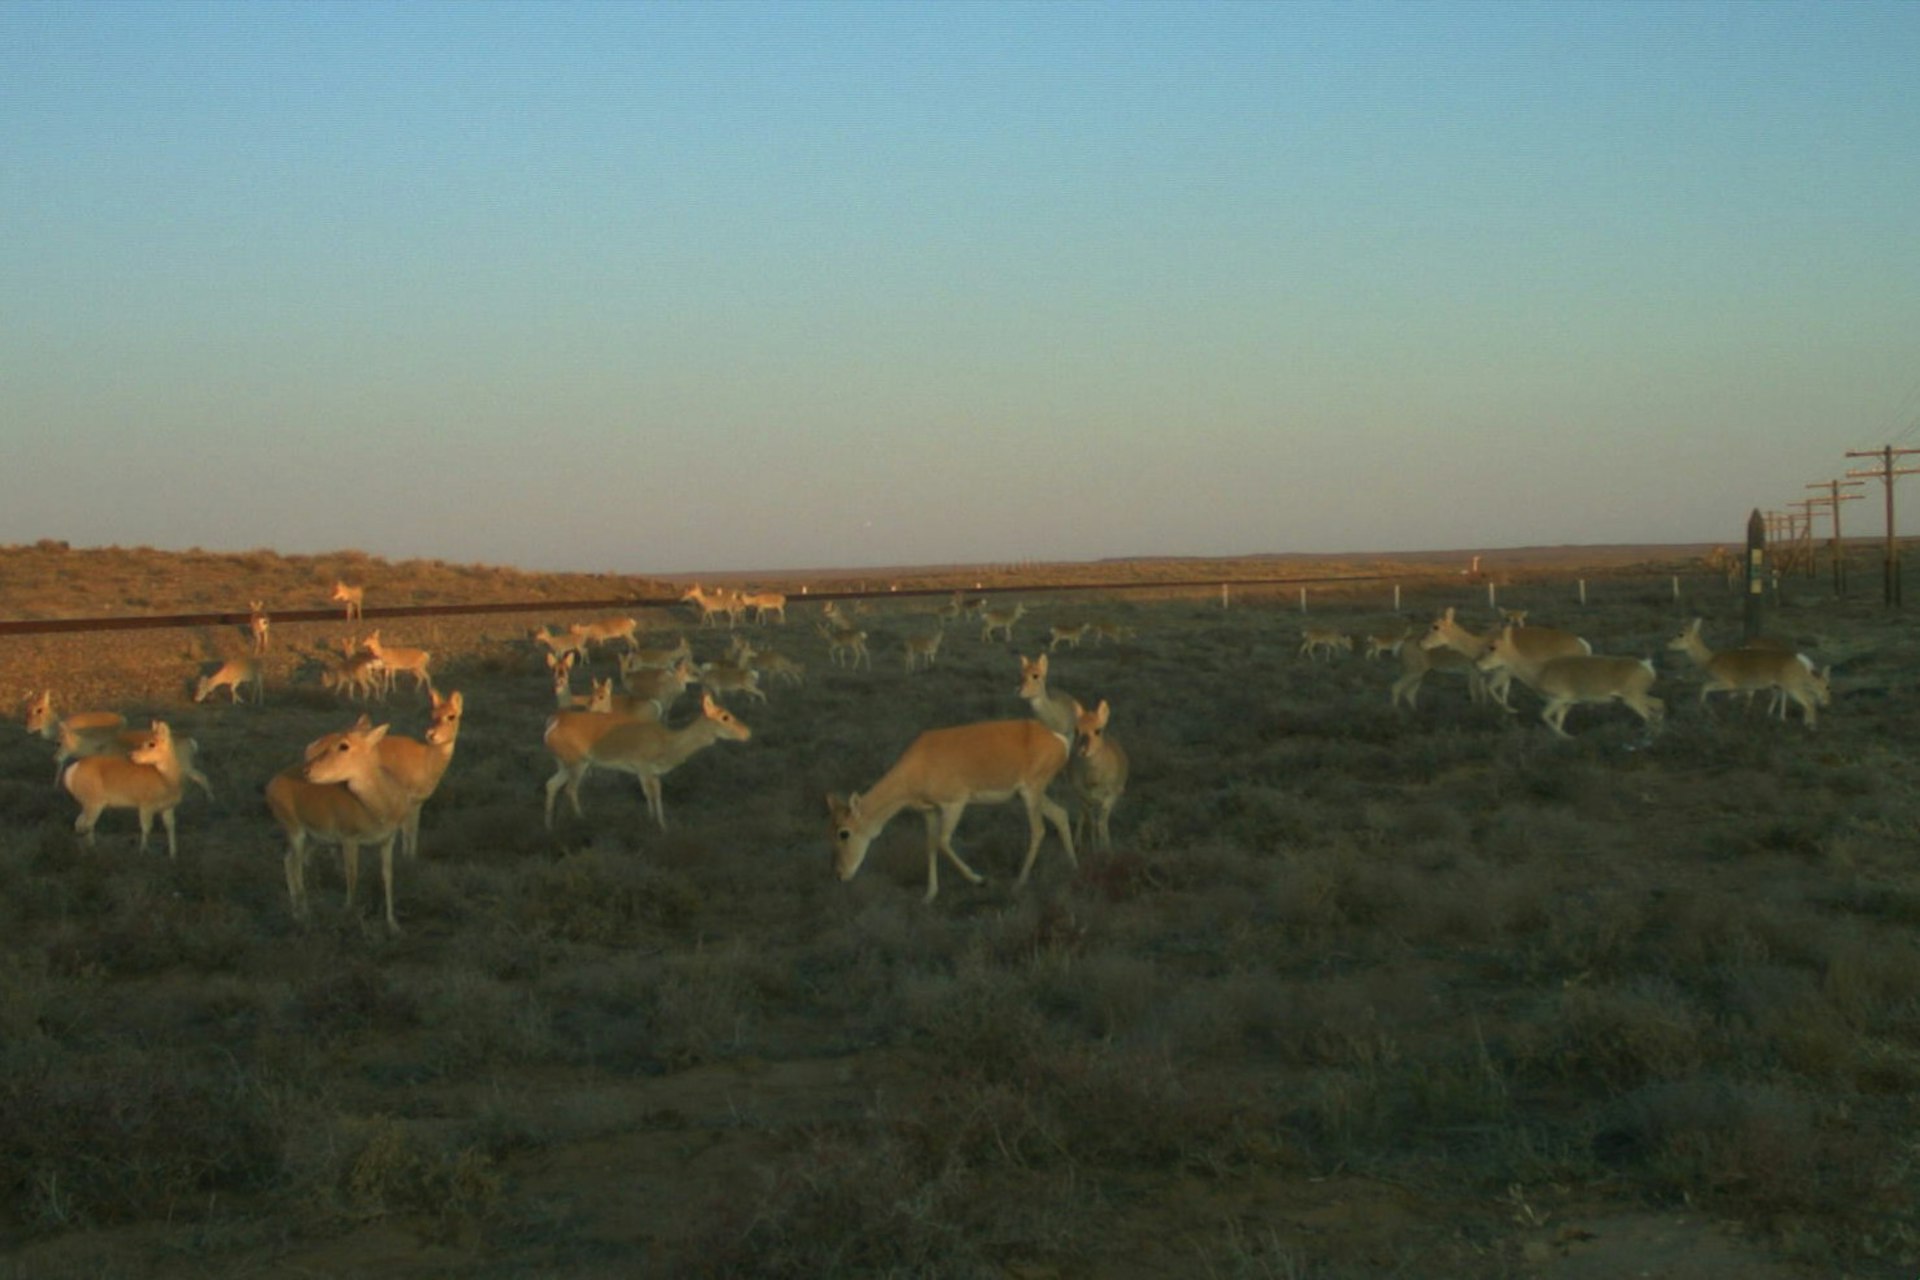 A herd of gazelle in Mongolia